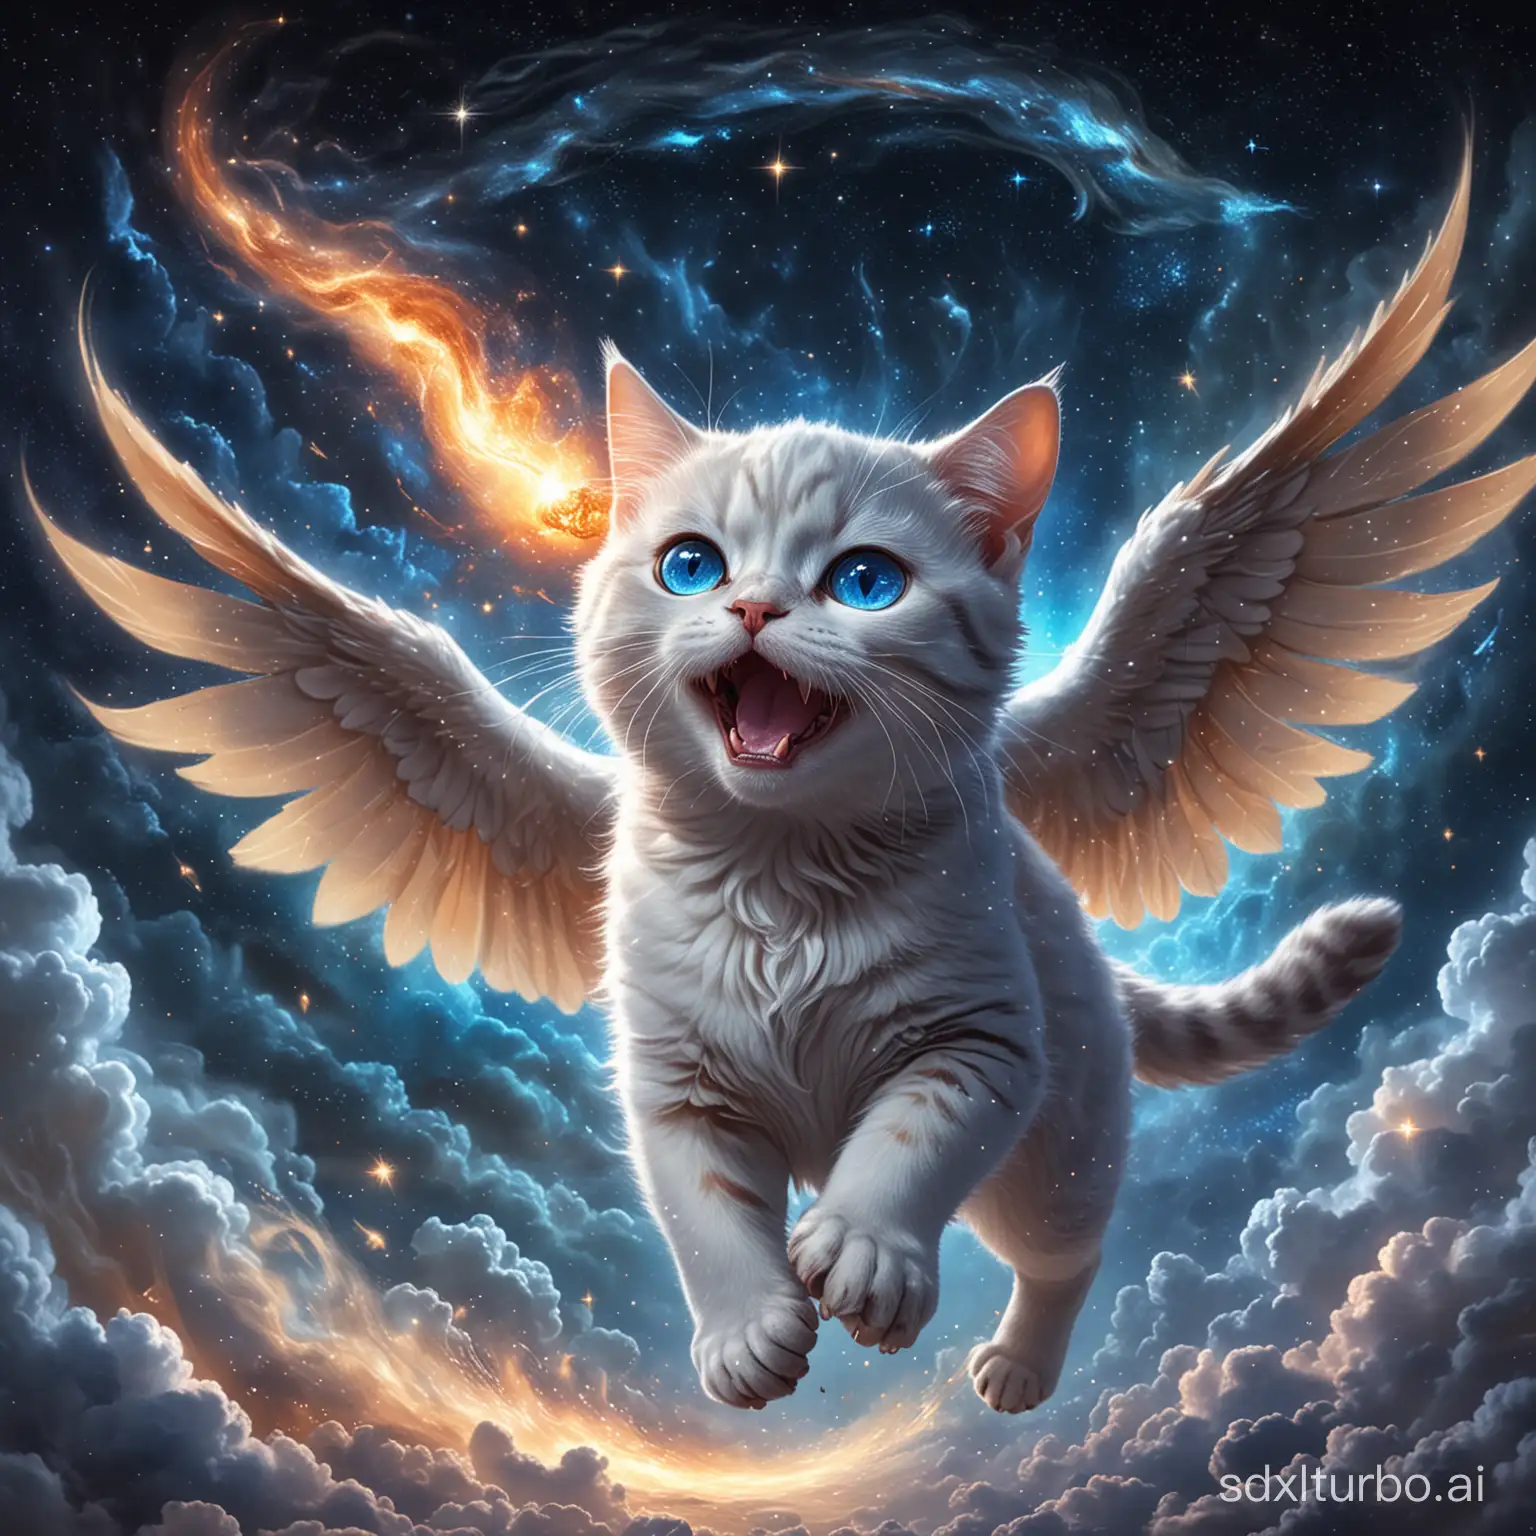 一只猫长着一翅膀，它在星空中奔跑，头顶还长着一只独角，眼睛深蓝色，嘴里喷着火，浑身像水晶一样透明，